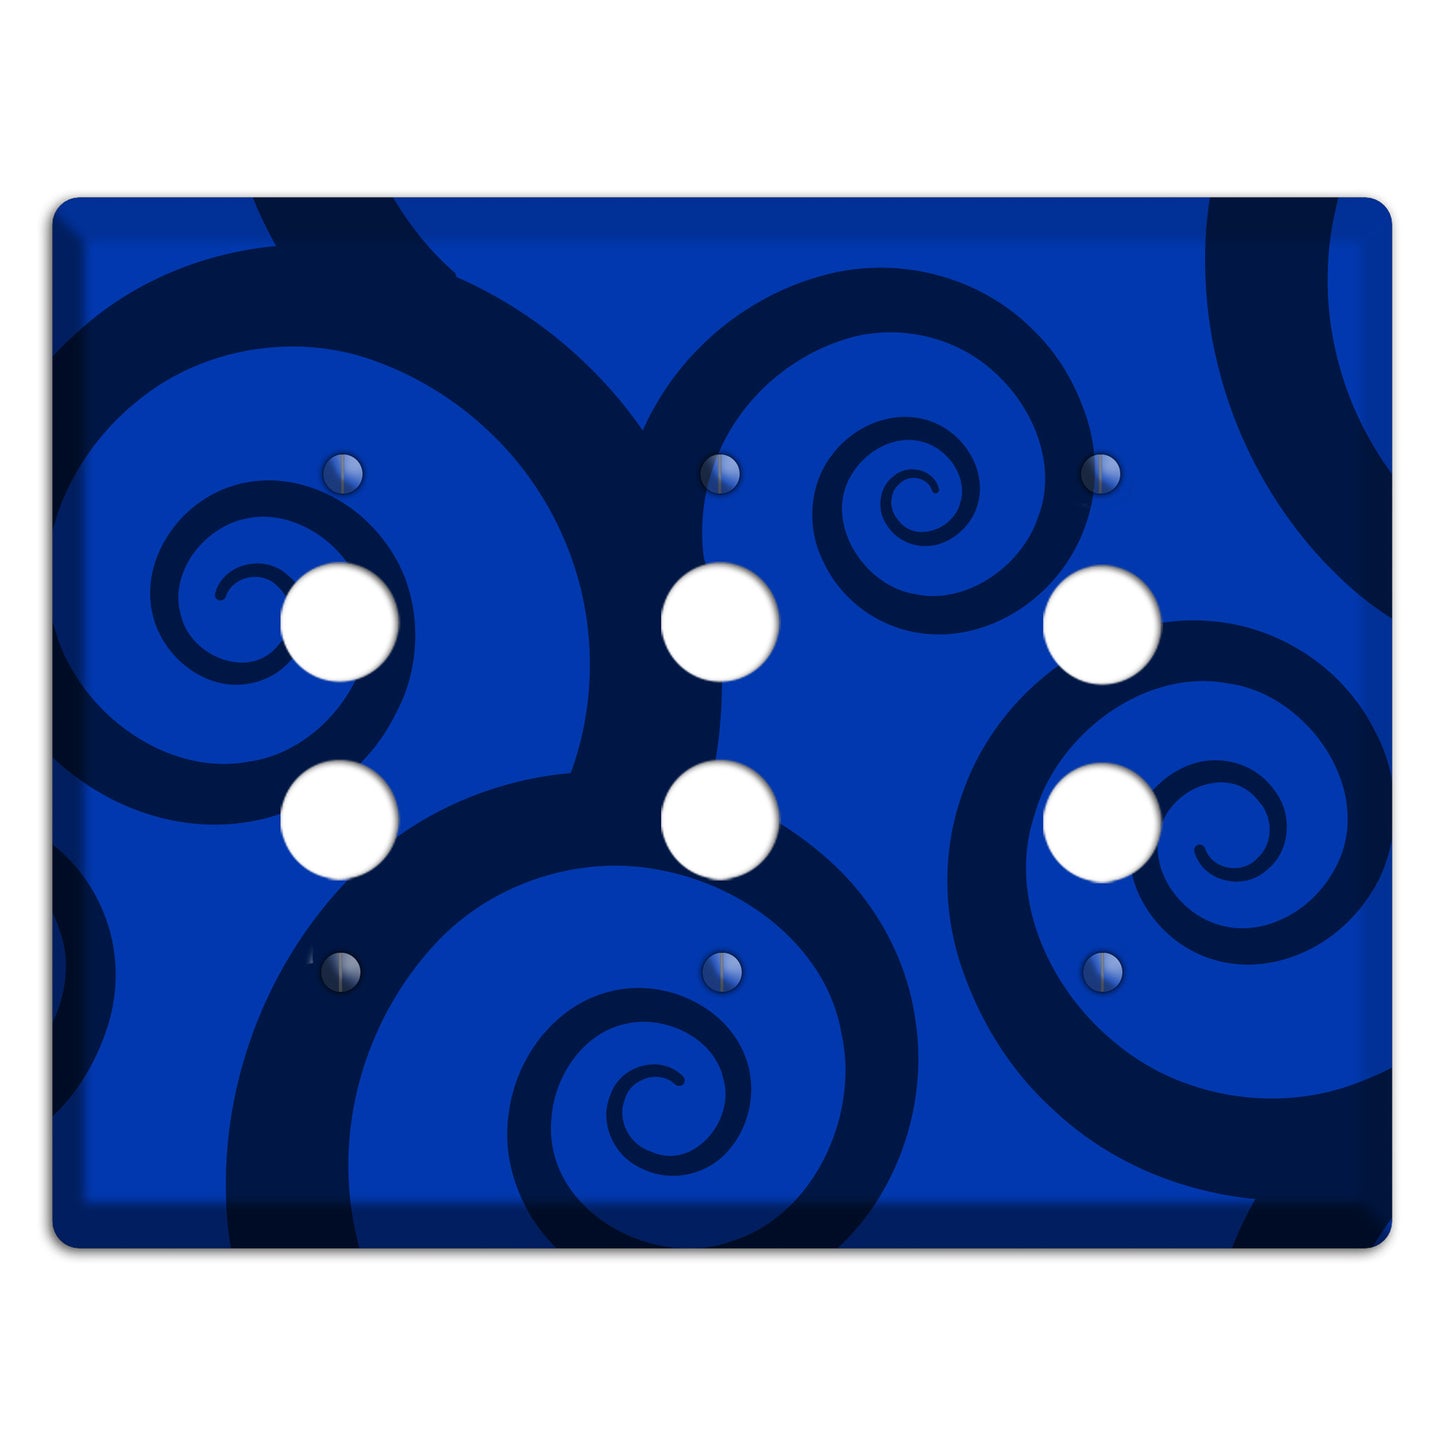 Blue Large Swirl 3 Pushbutton Wallplate